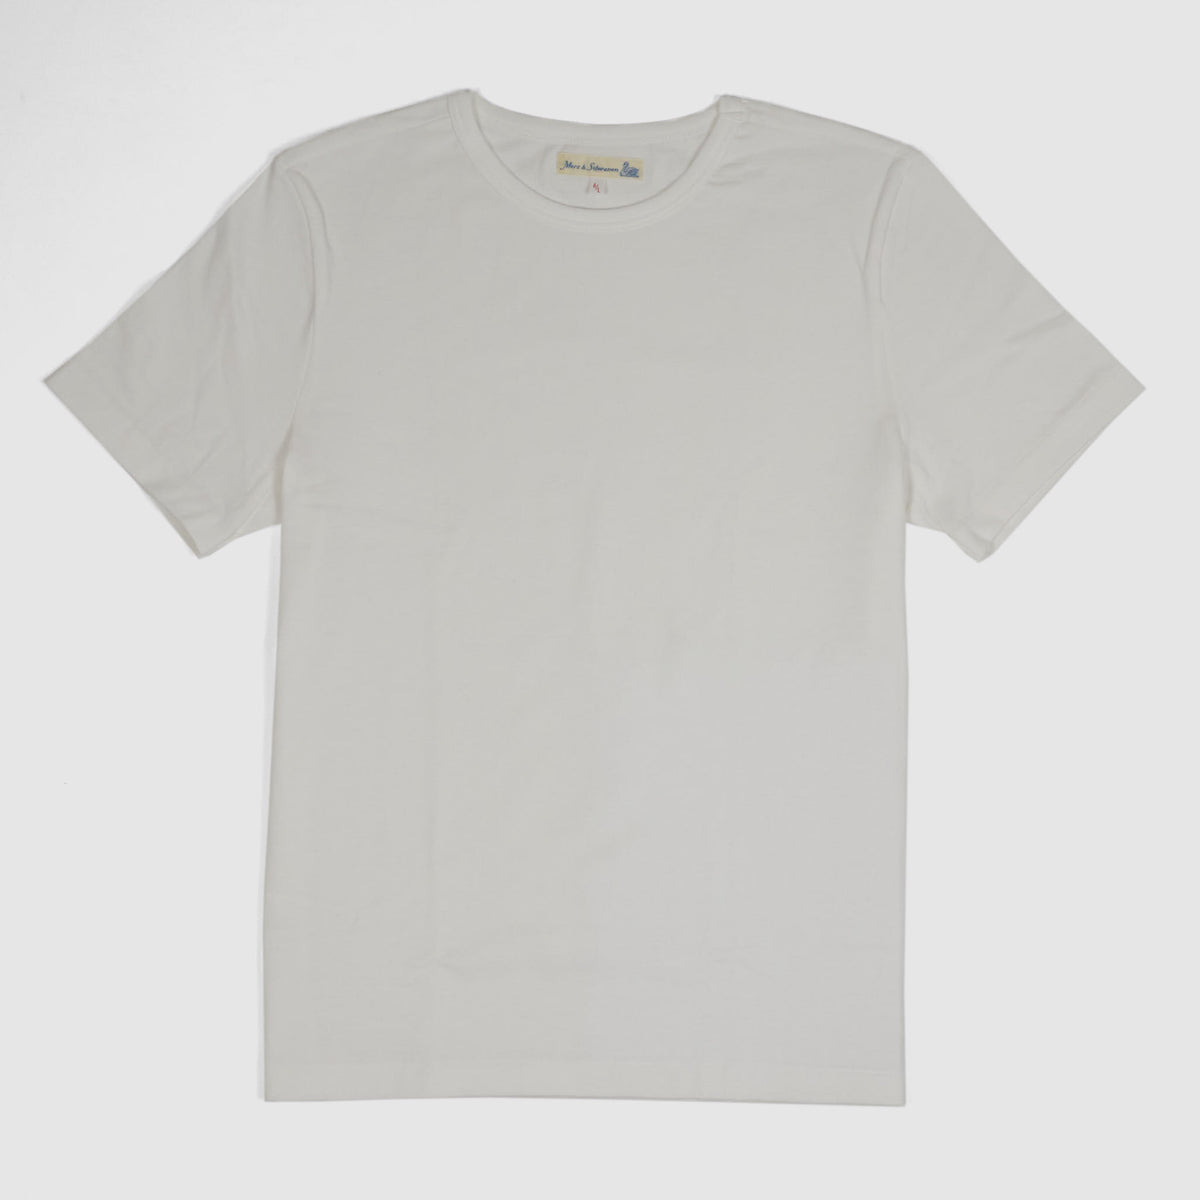 Merz b.Schwanen Soft Organic Cotton Loop Wheeler Short Sleeves T-Shirt